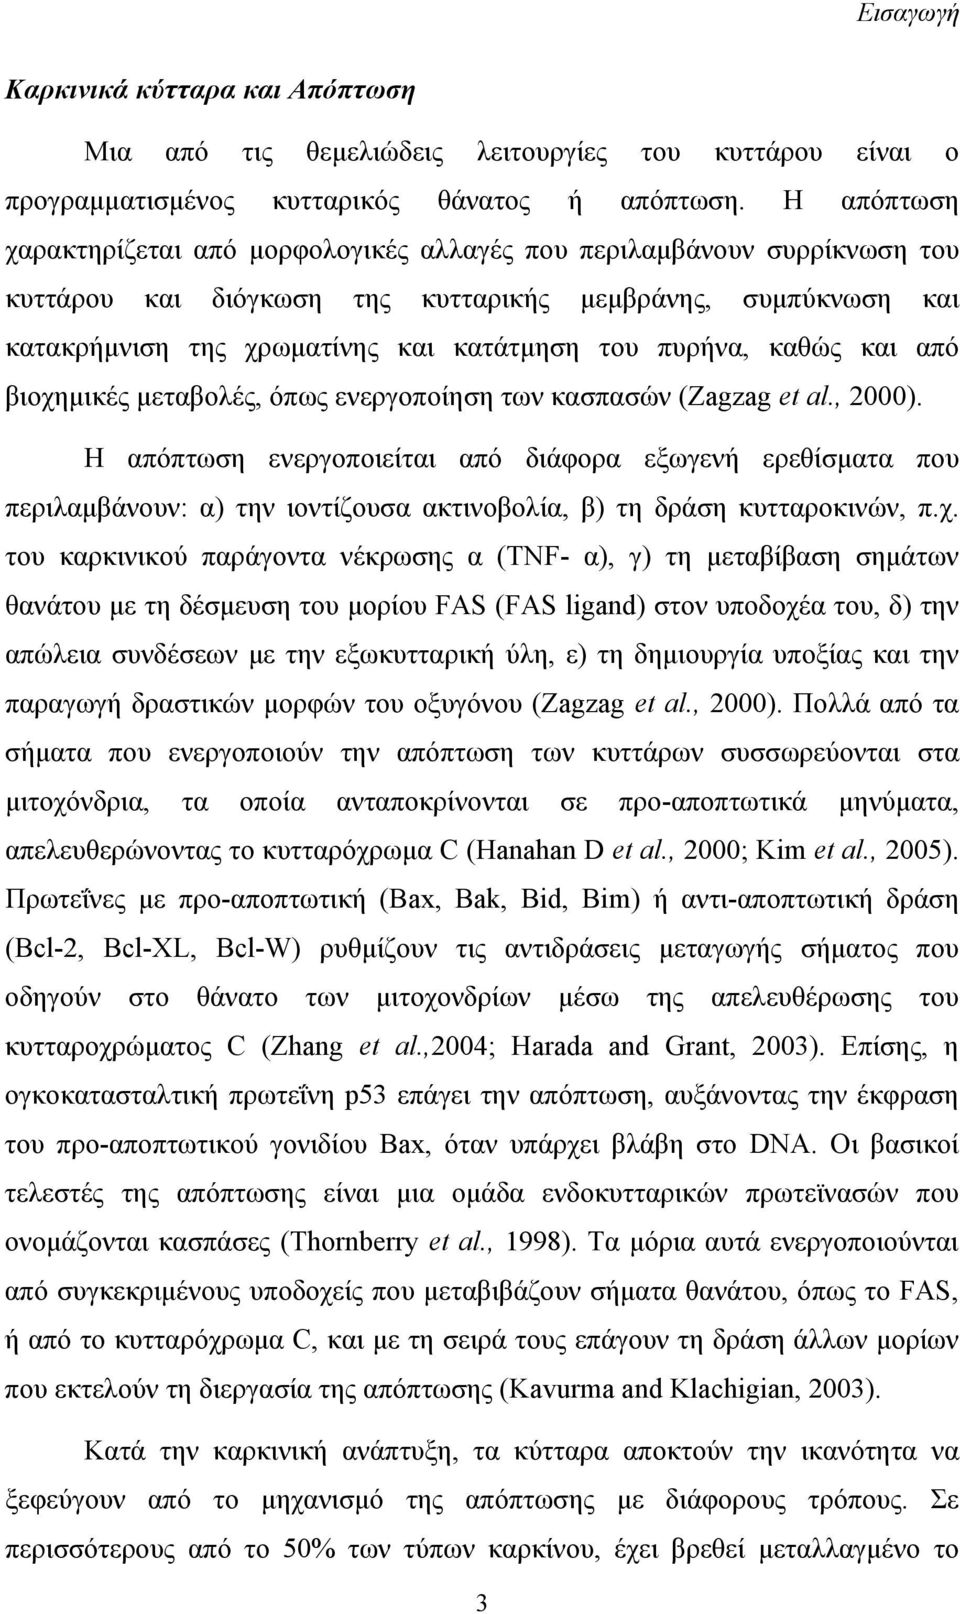 πυρήνα, καθώς και από βιοχημικές μεταβολές, όπως ενεργοποίηση των κασπασών (Zagzag et al., 2000).